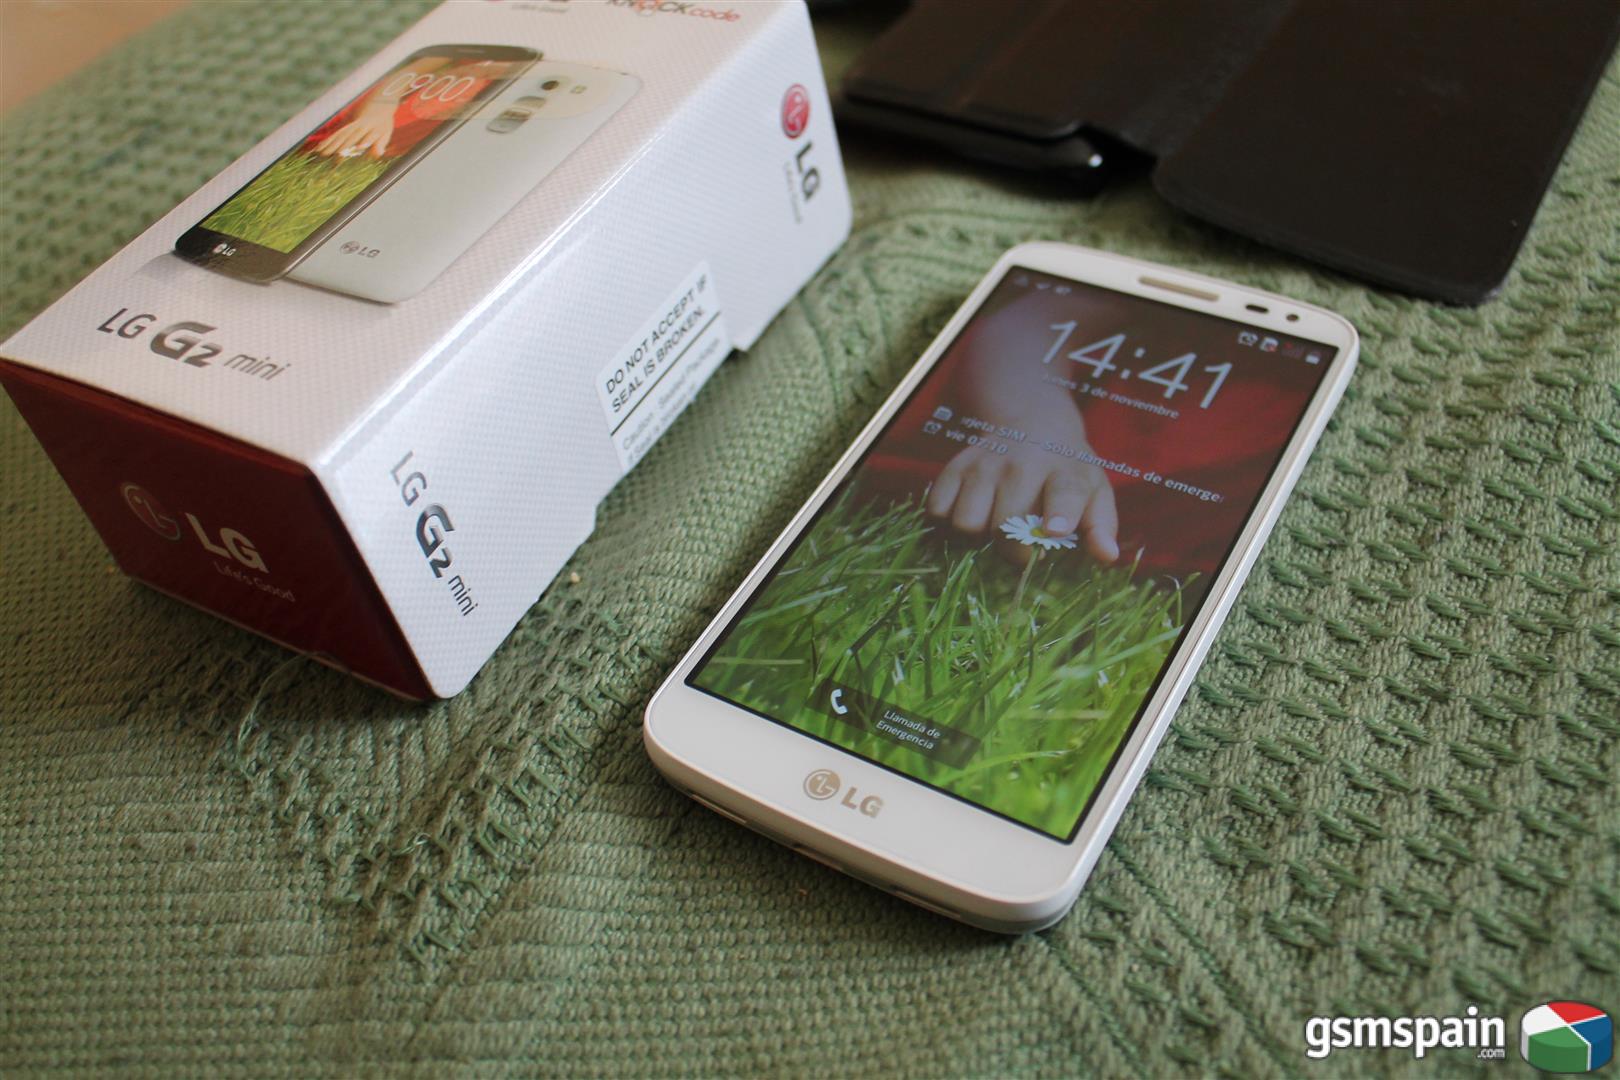 [VENDO] LG G2 Mini D620 Blanco Libre impecable + Funda piel y factura.....